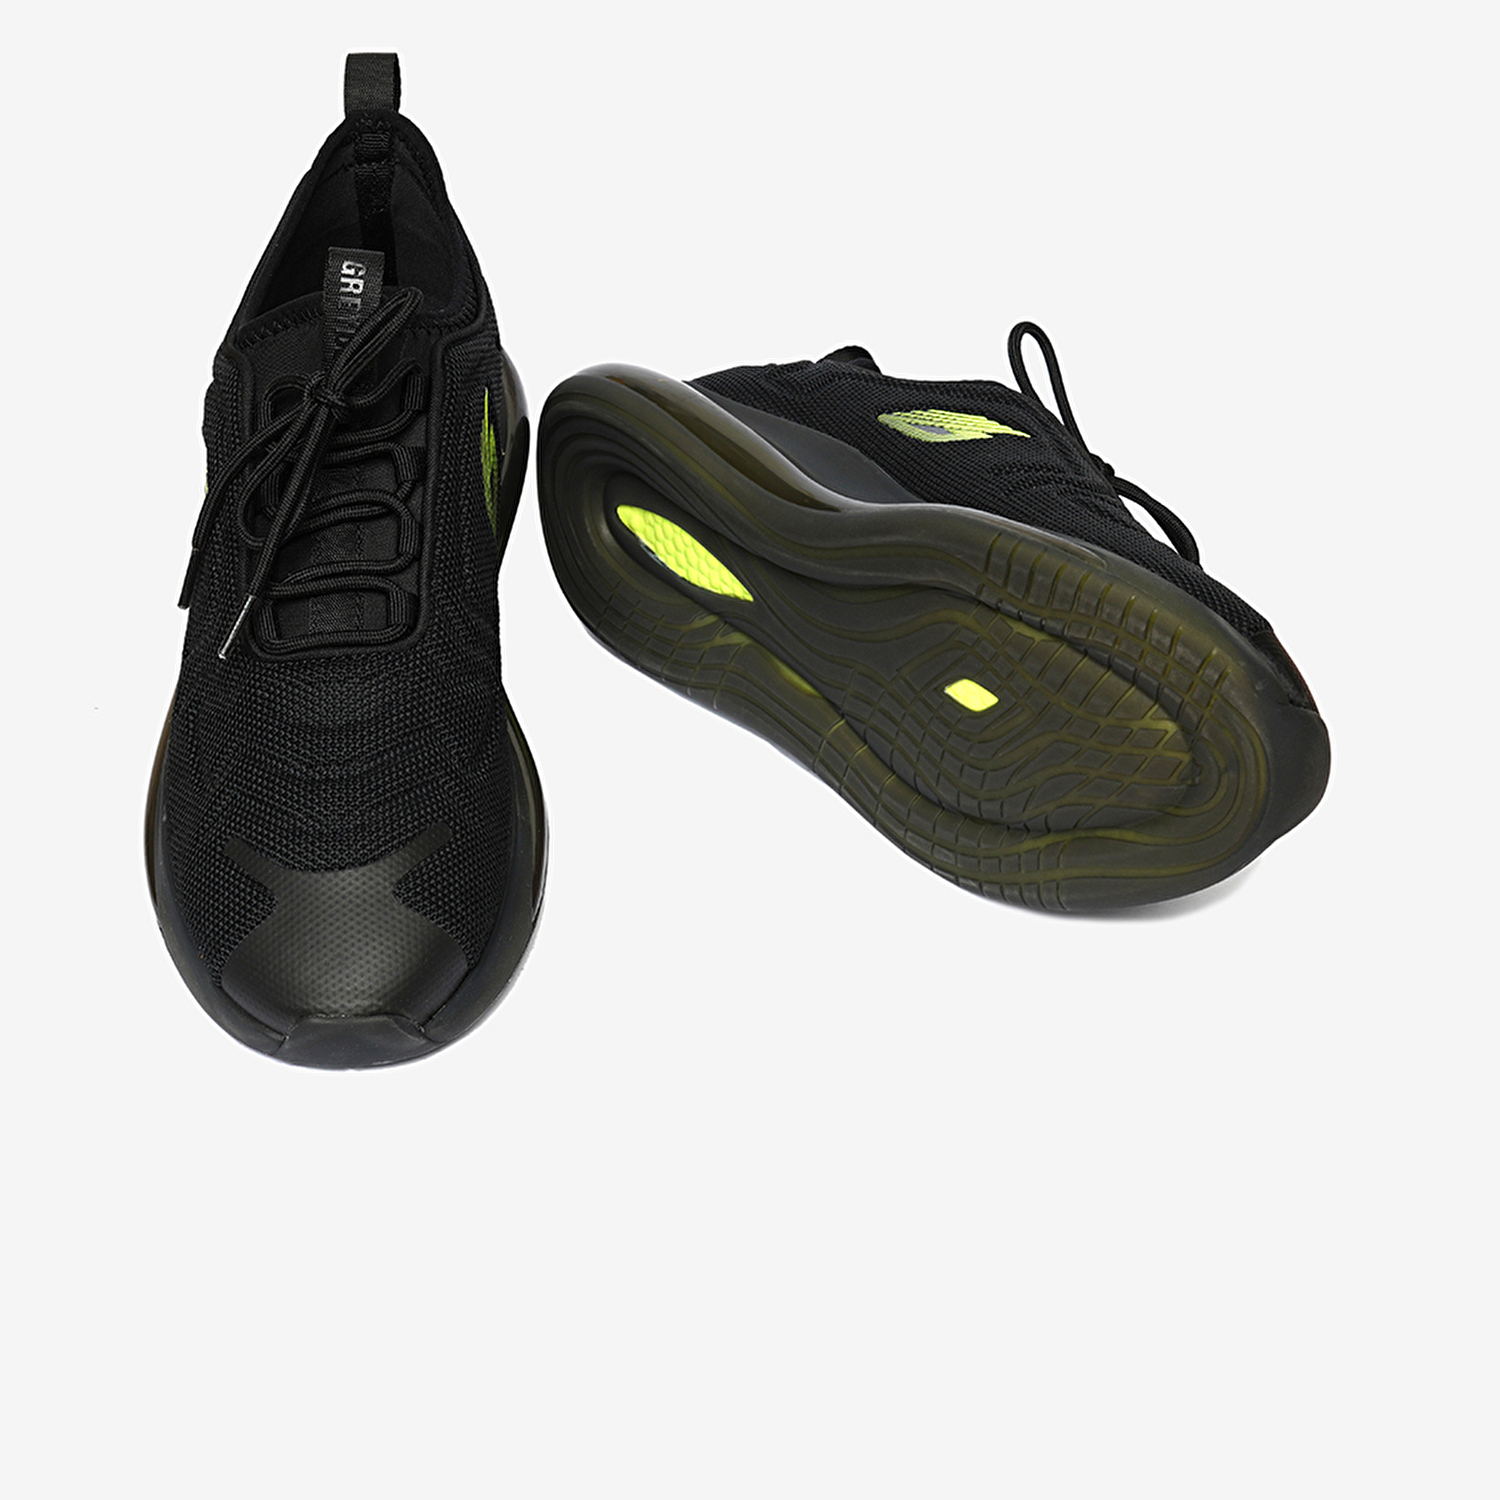 Erkek Siyah Yeşil Hakiki Deri Spor Ayakkabı 4Y1SA14731-6